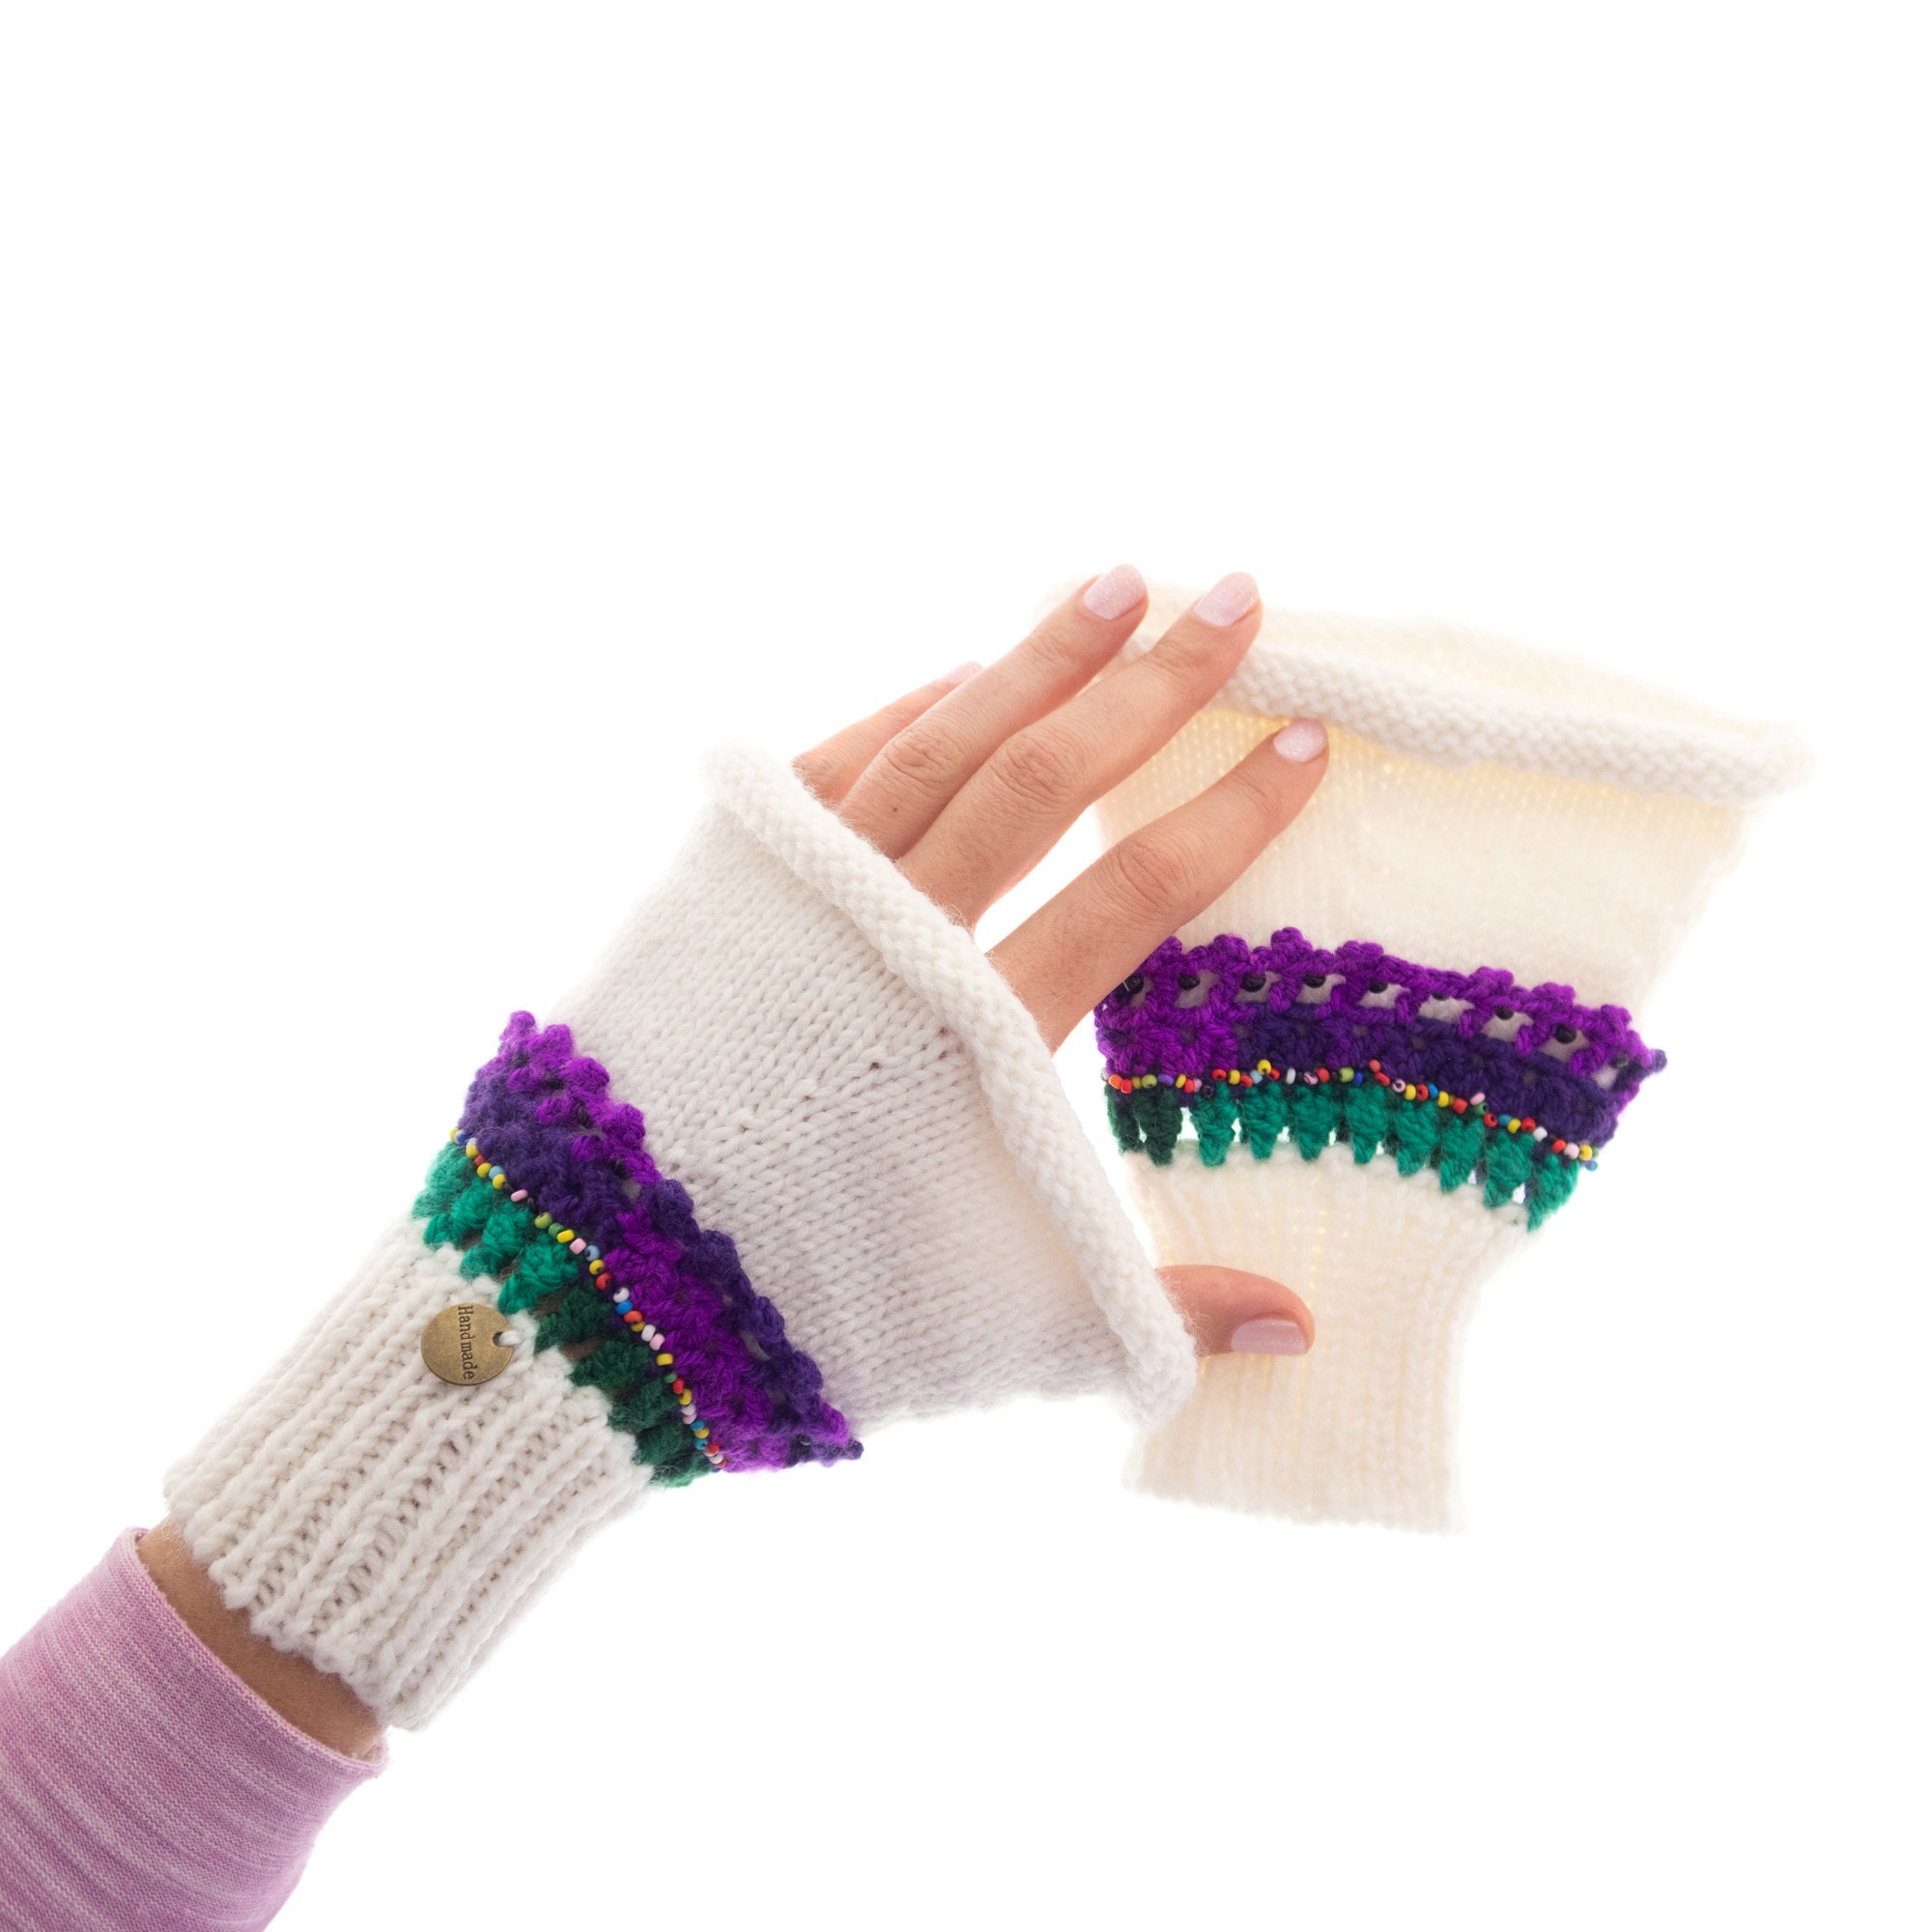 handmade hand gloves woolen knitted, winter